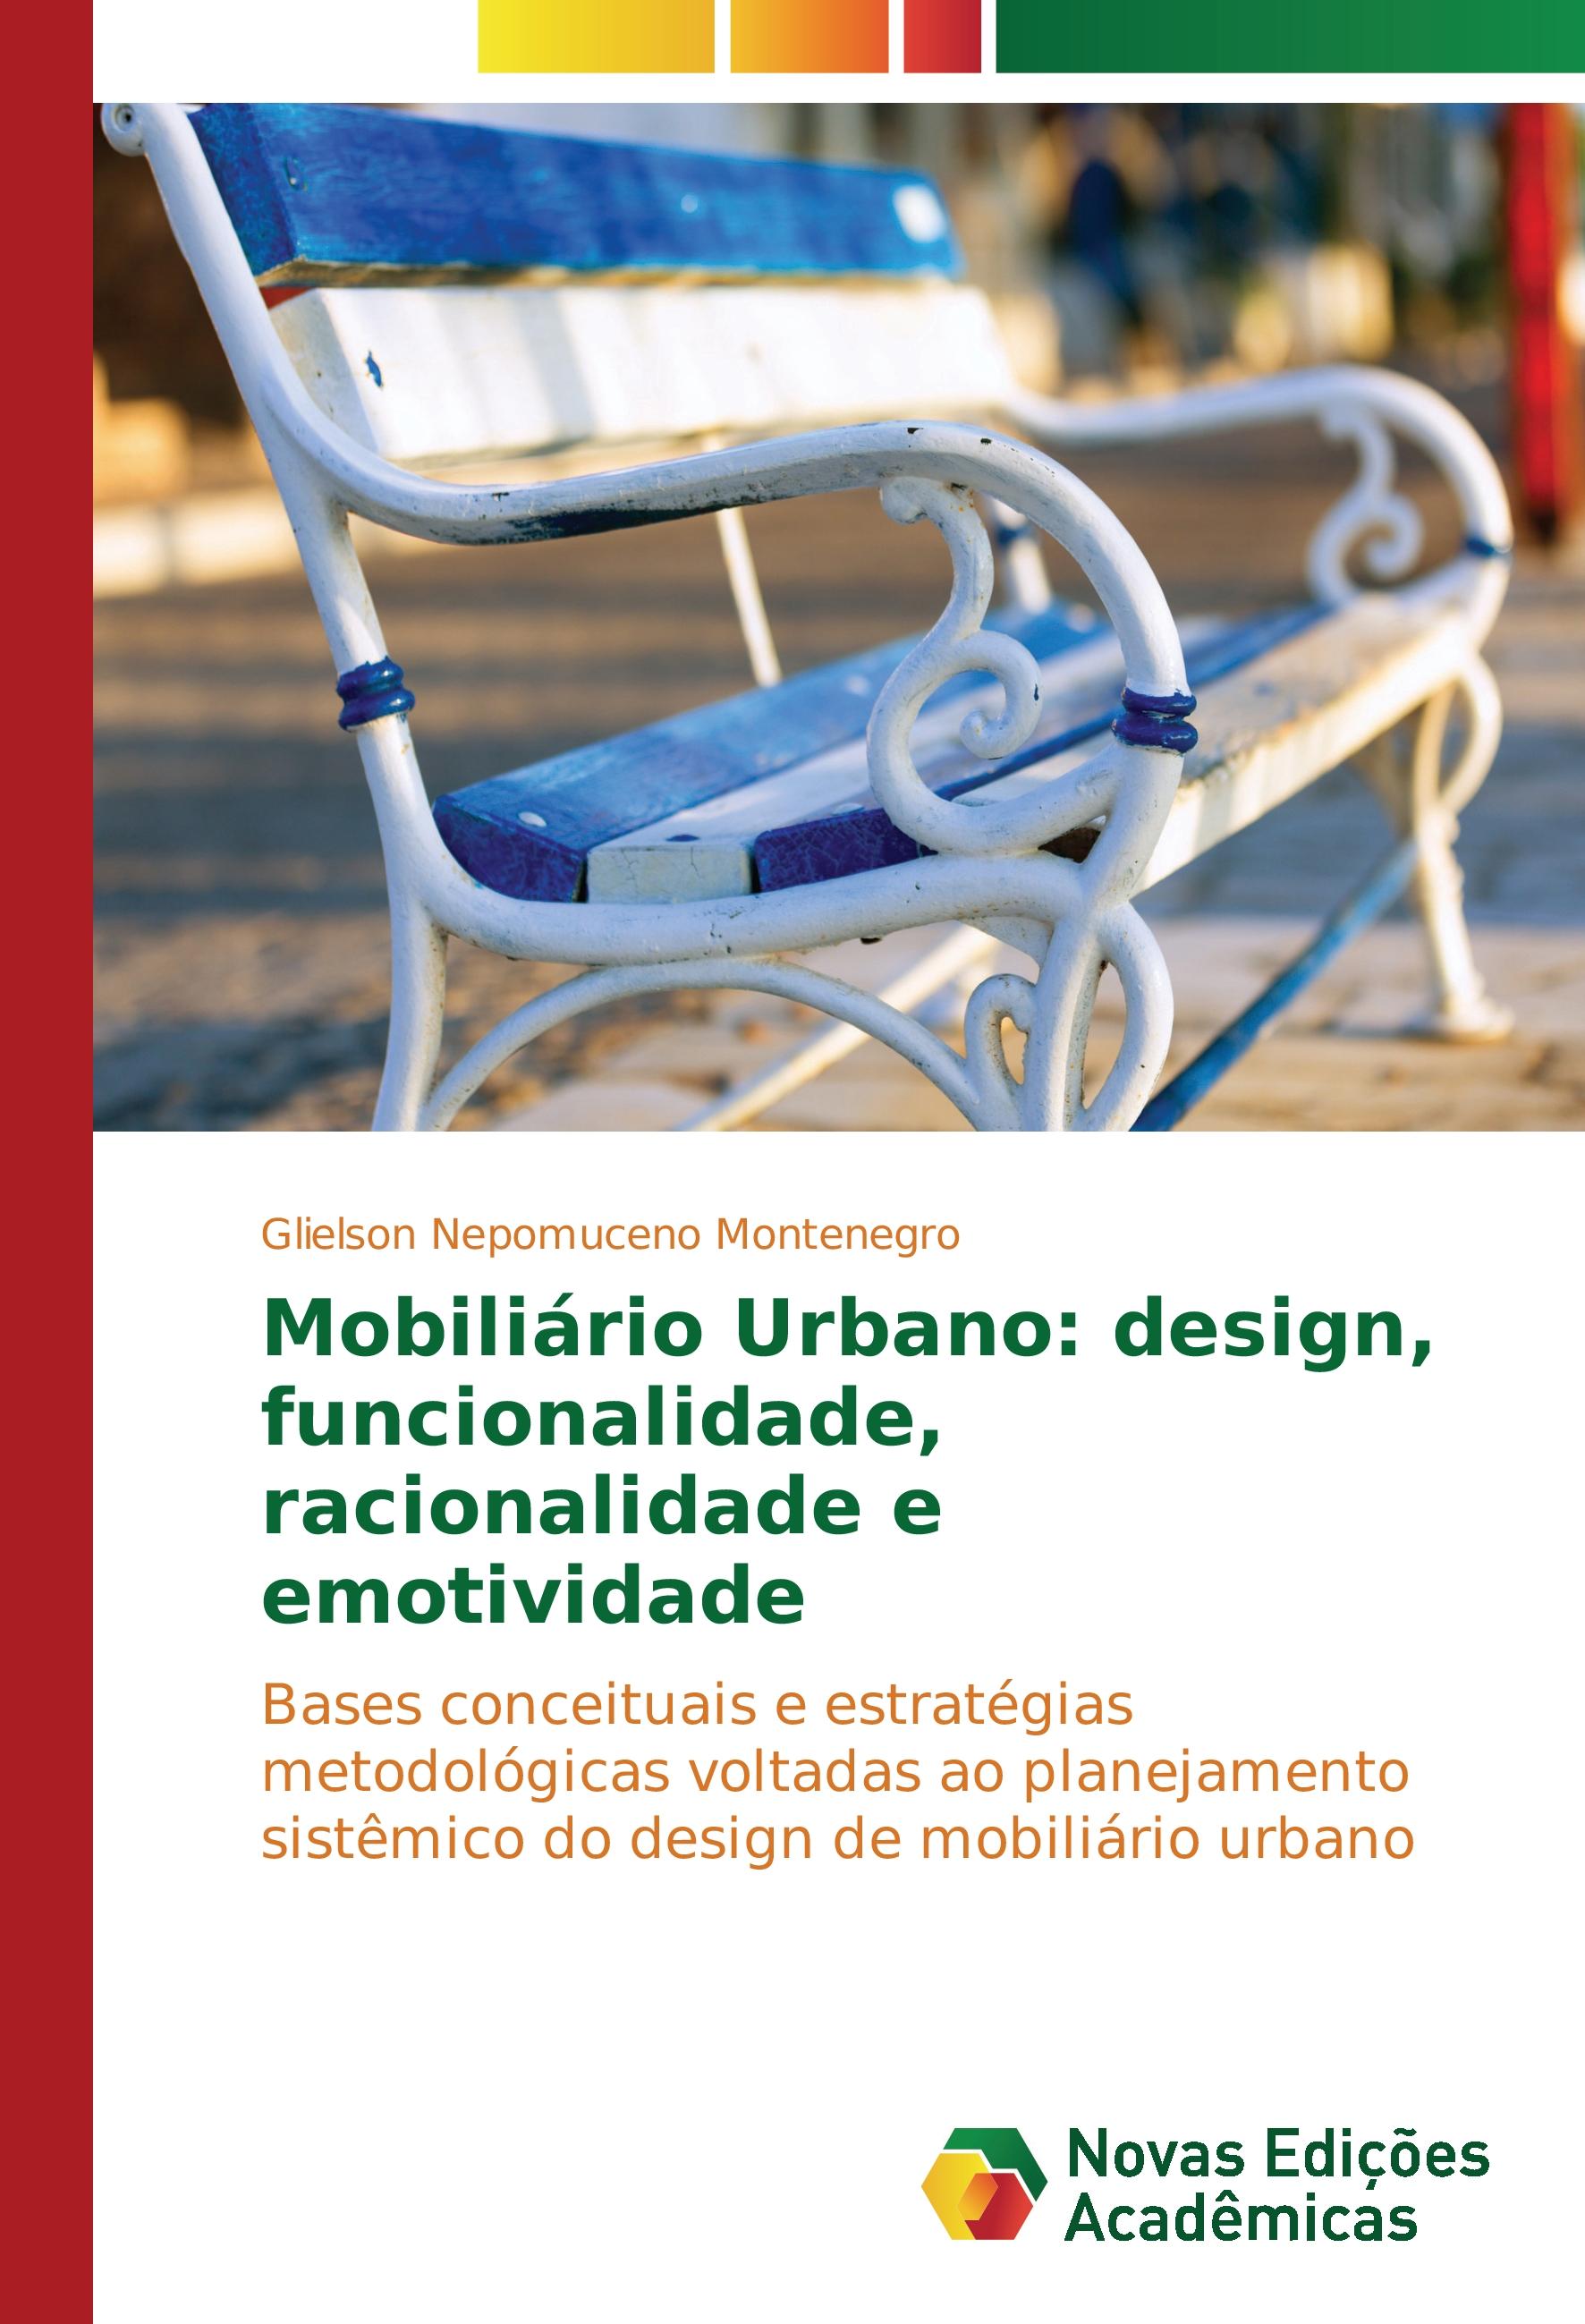 Mobiliário Urbano: design, funcionalidade, racionalidade e emotividade - Glielson Nepomuceno Montenegro